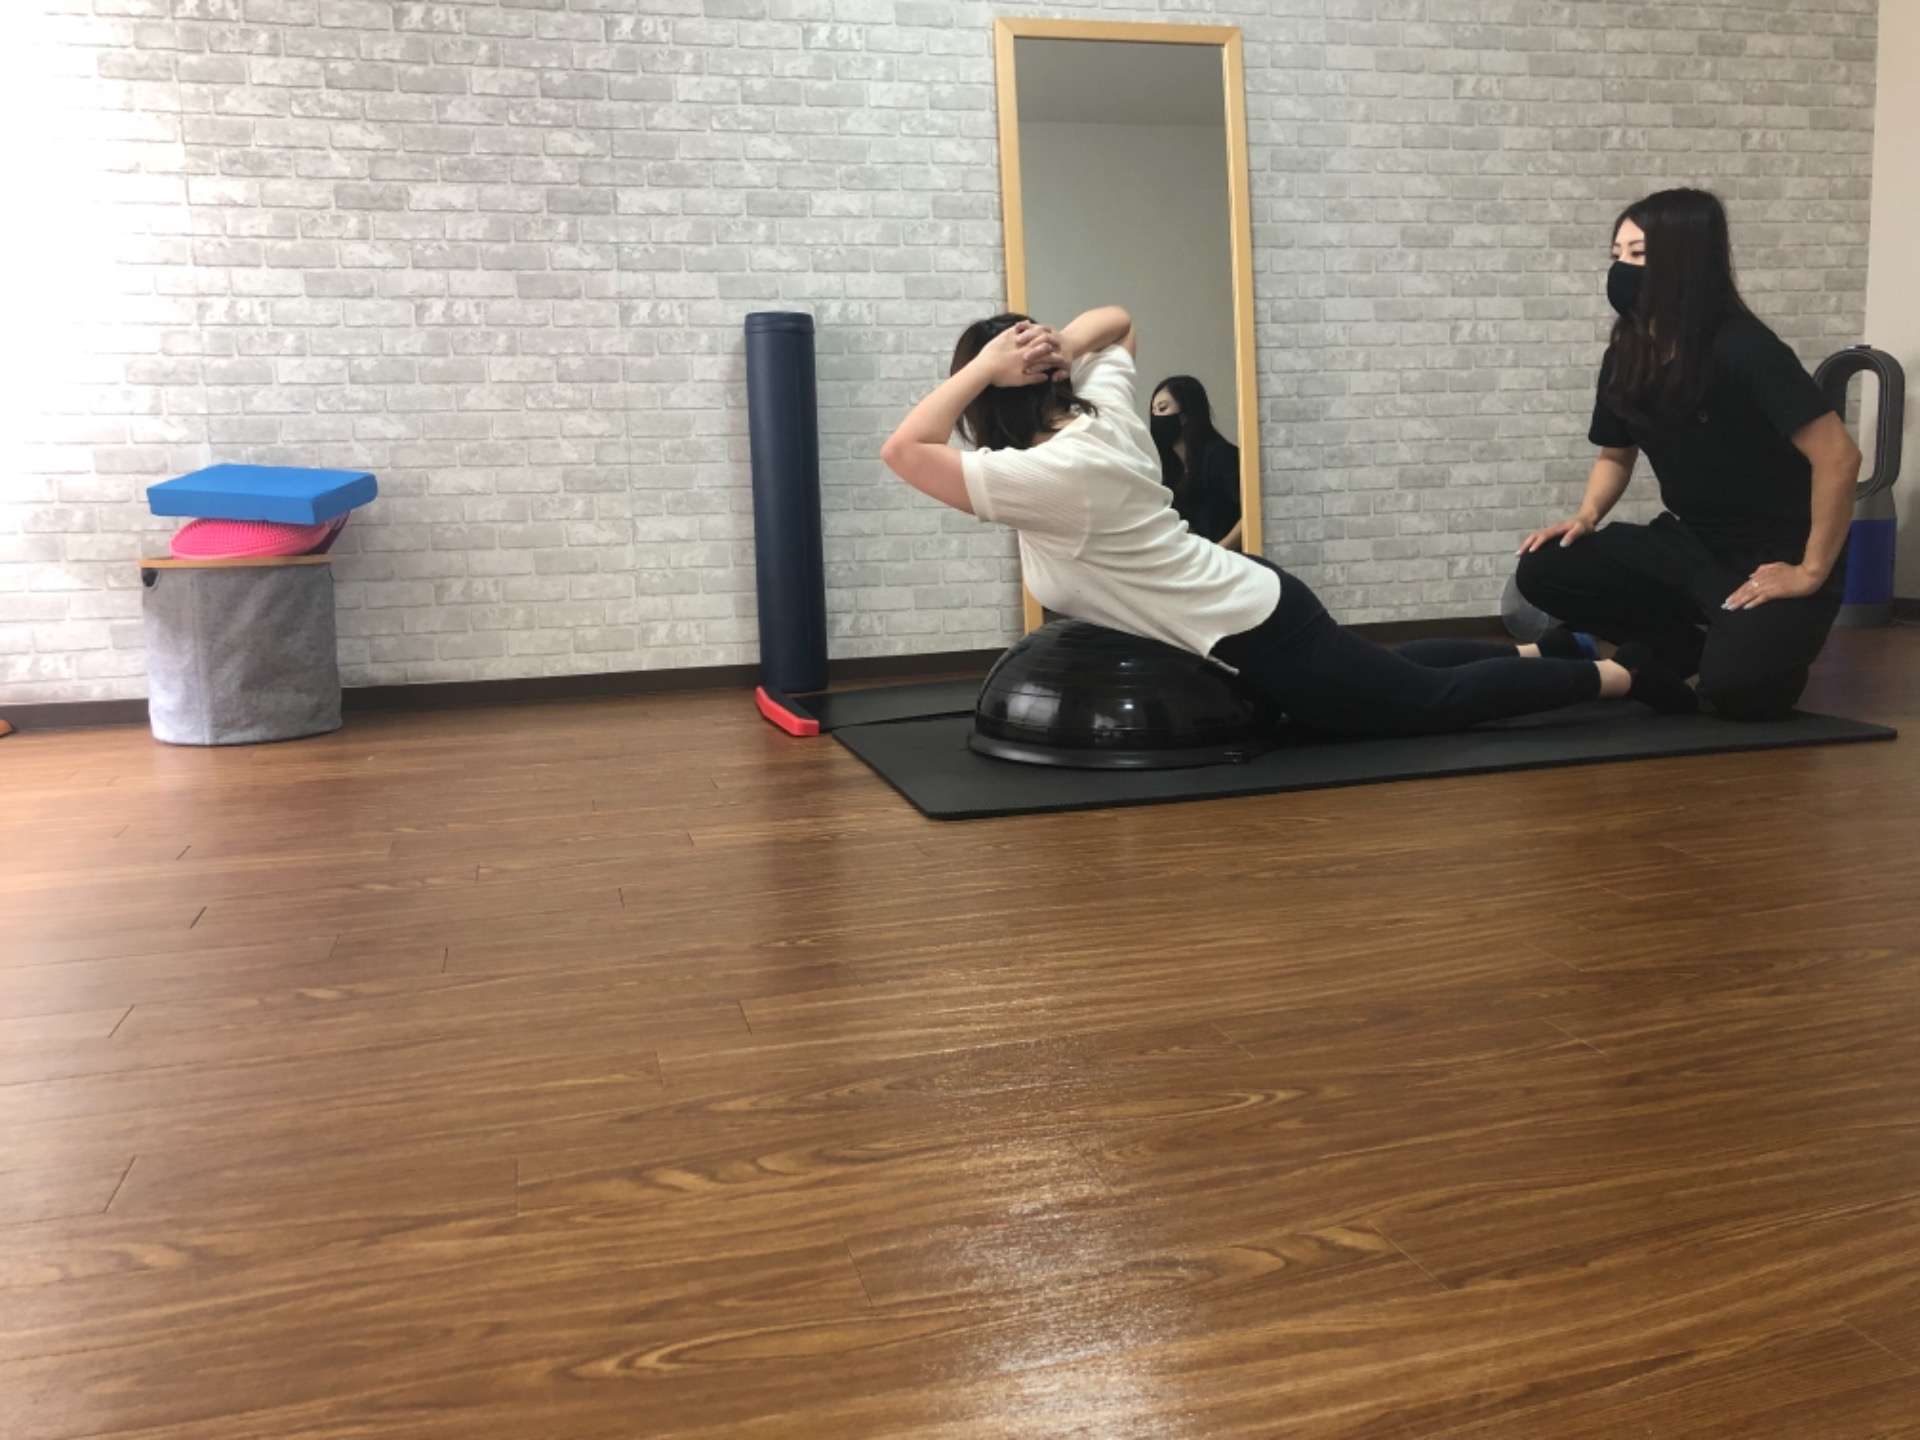 滋賀県草津市で女性トレーナーのいるパーソナルトレーニング